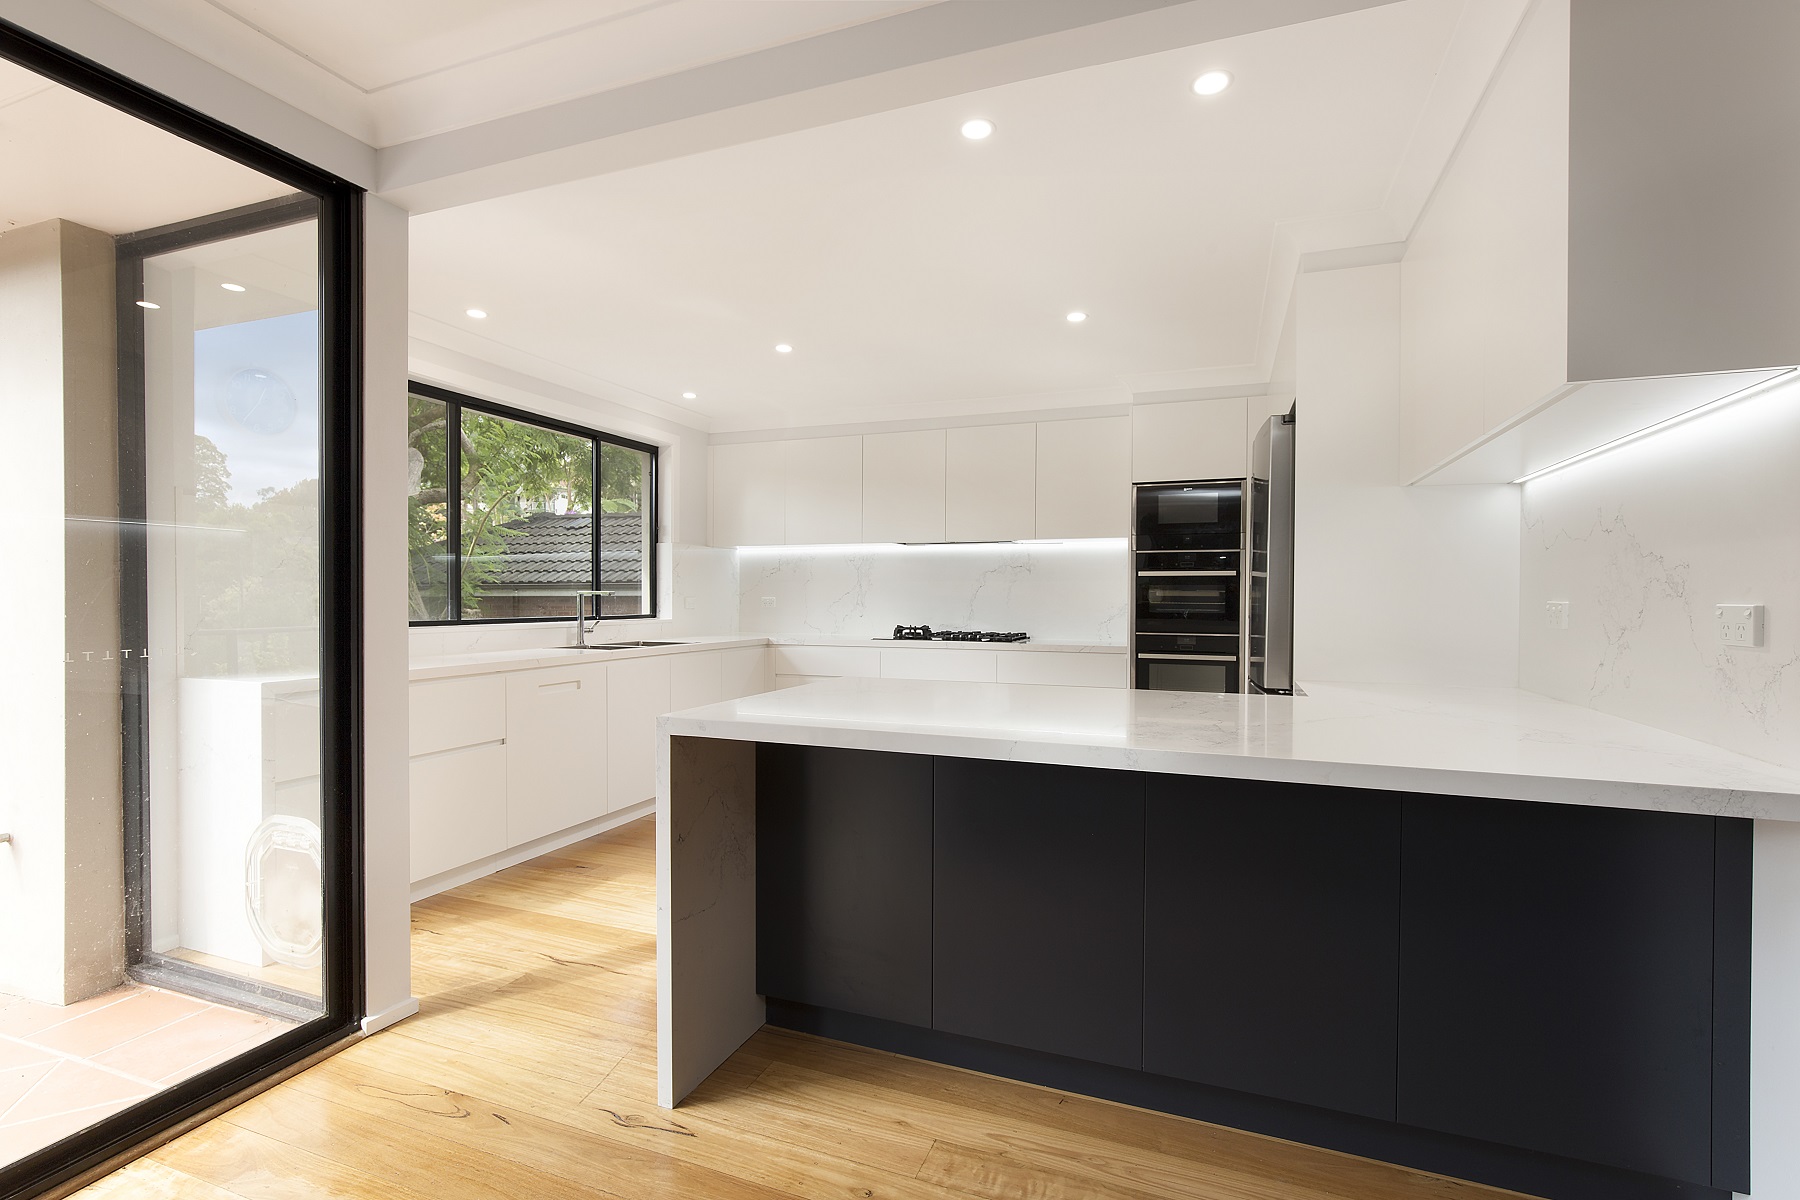 Forestville, Streamline polyurethane kitchen with integrated 45 degree handles